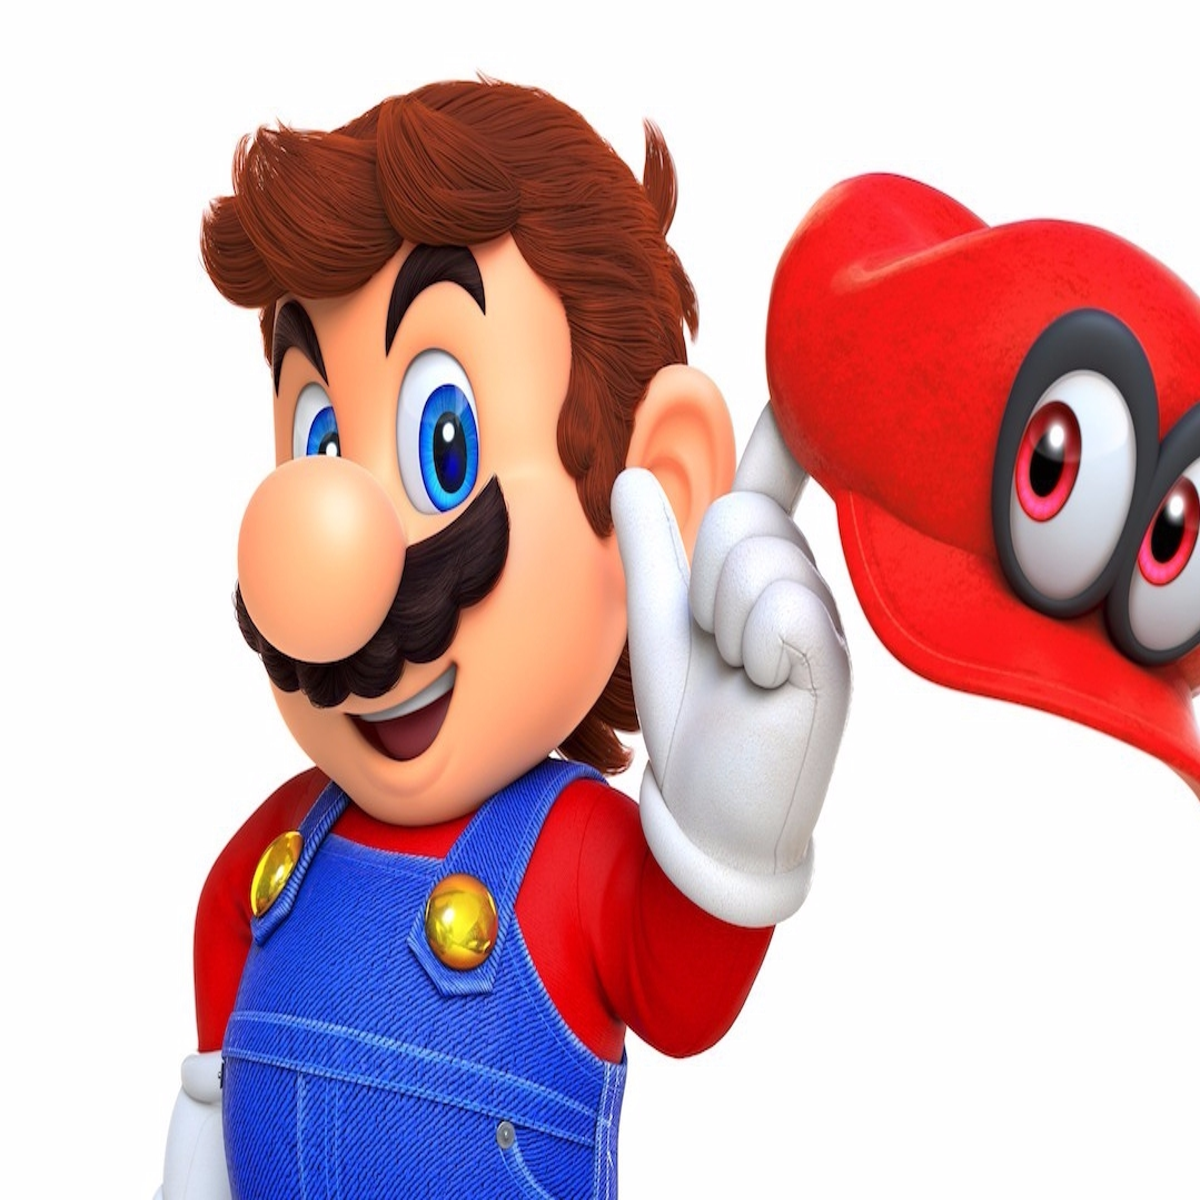 Comprar Super Mario Odyssey - Nintendo Switch Jogo para PC